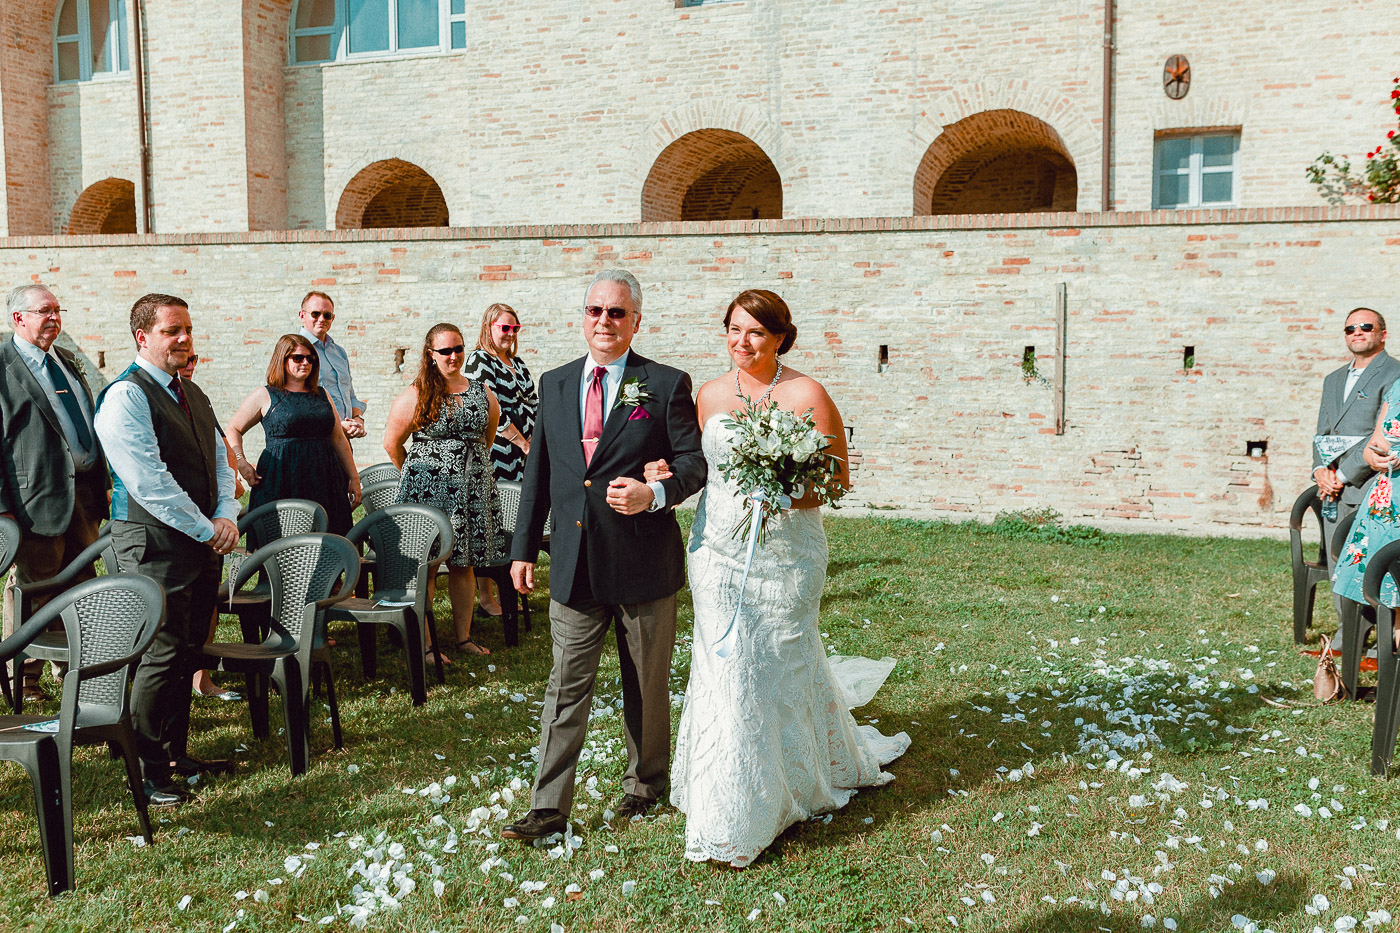 Palazzo Mannocchi Petritoli Wedding Photographer